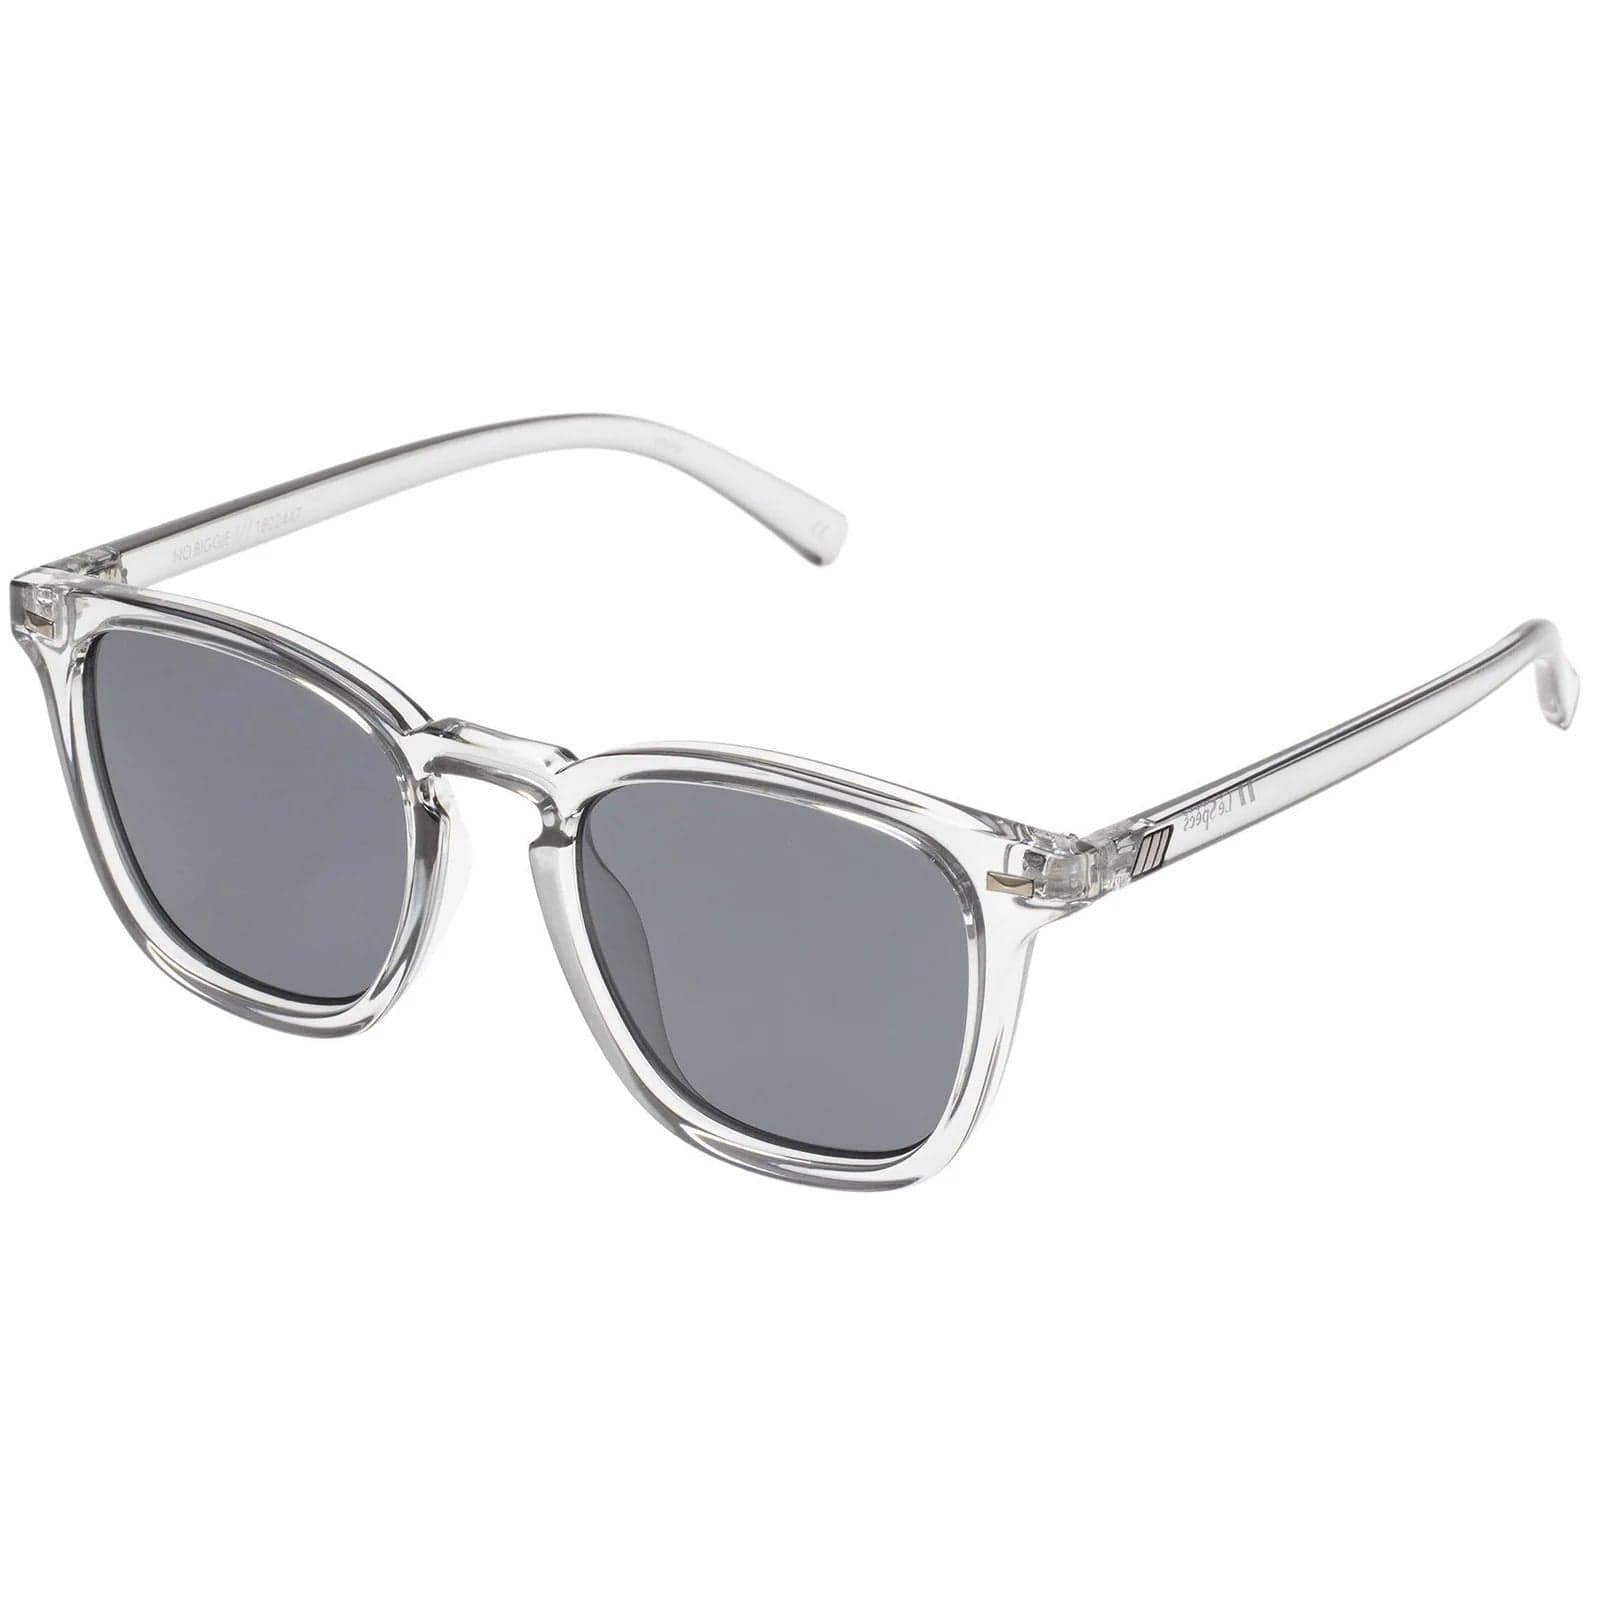 Le Specs No Biggie Pewter-Smoke Sunglasses